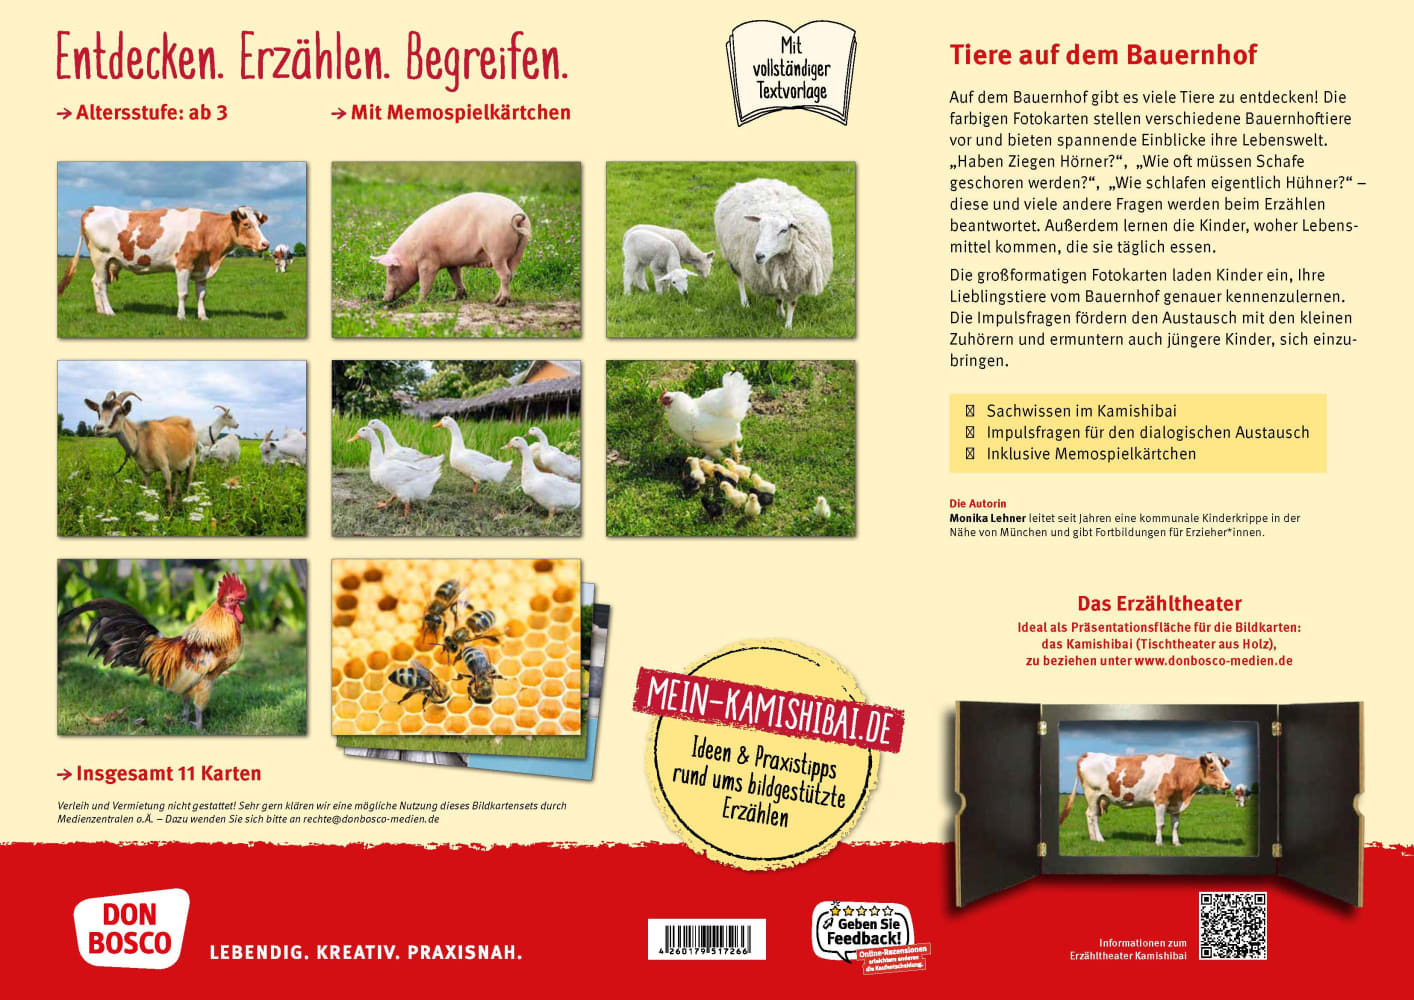 Huhn, Schwein und Kuh. Tiere auf dem Bauernhof. Kamishibai Bildkarten und Memospiel